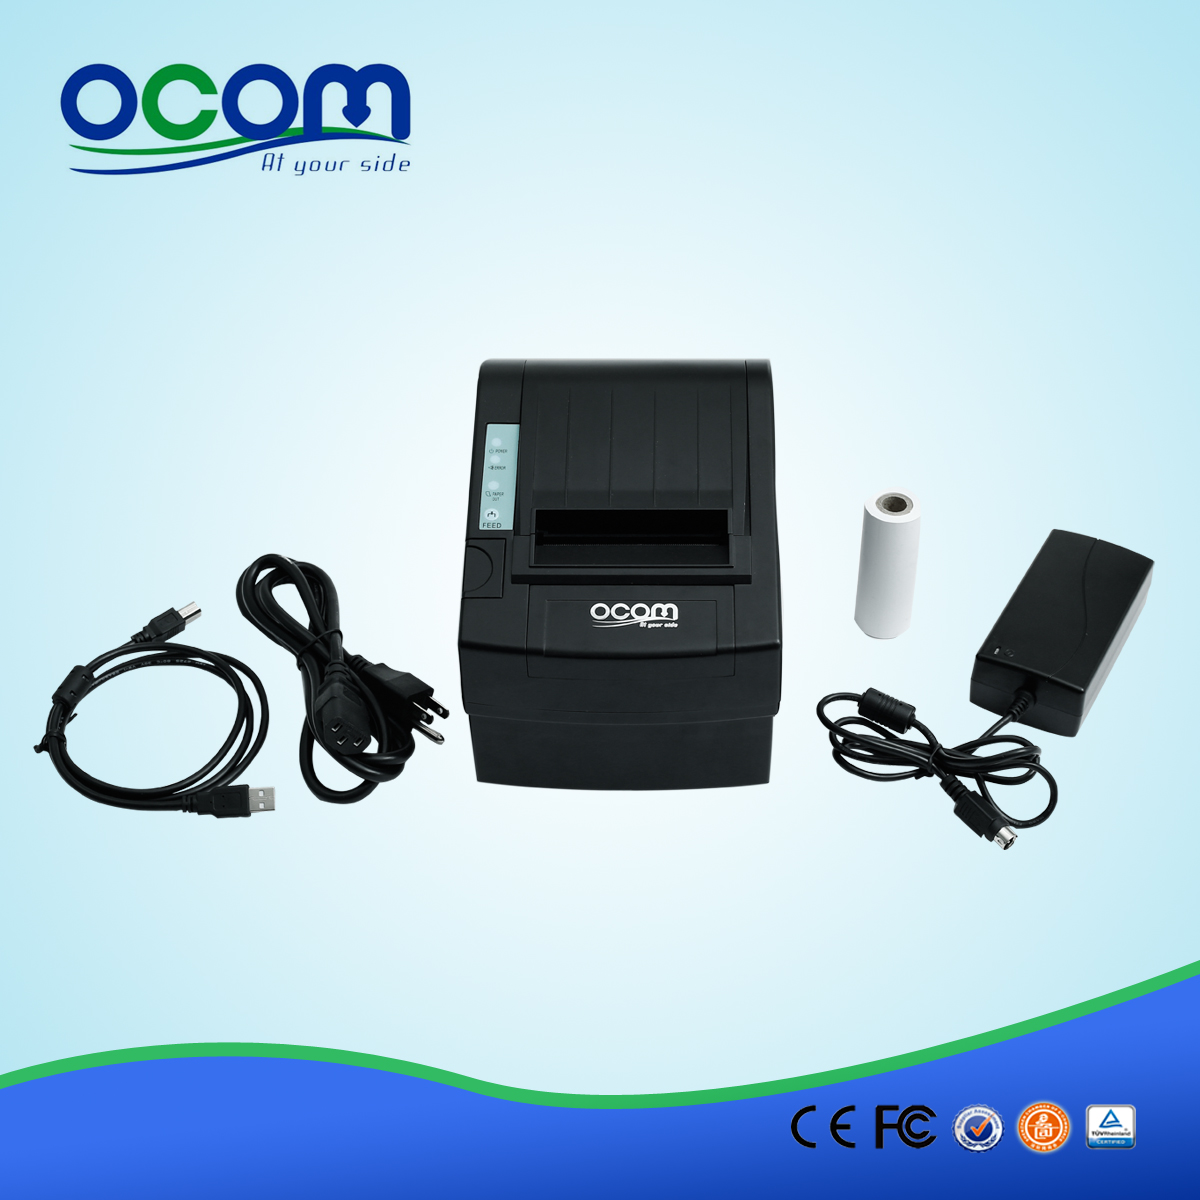 中国80毫米WIFI热敏收据打印机OCPP-806-W